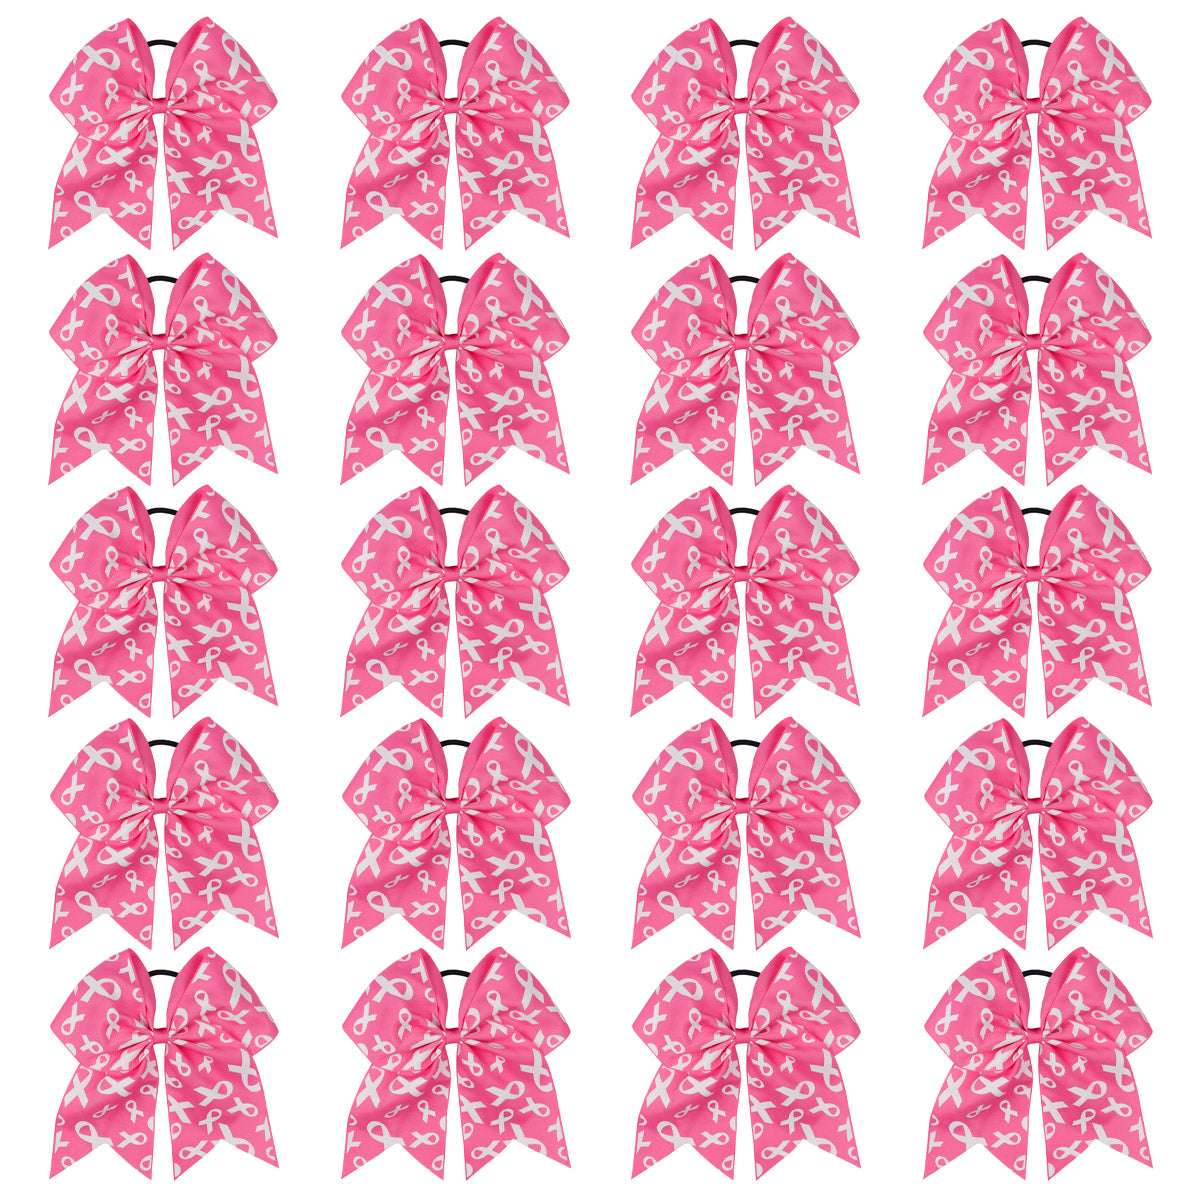 20PCS Hot Pink Breast Cancer Cheer Bows